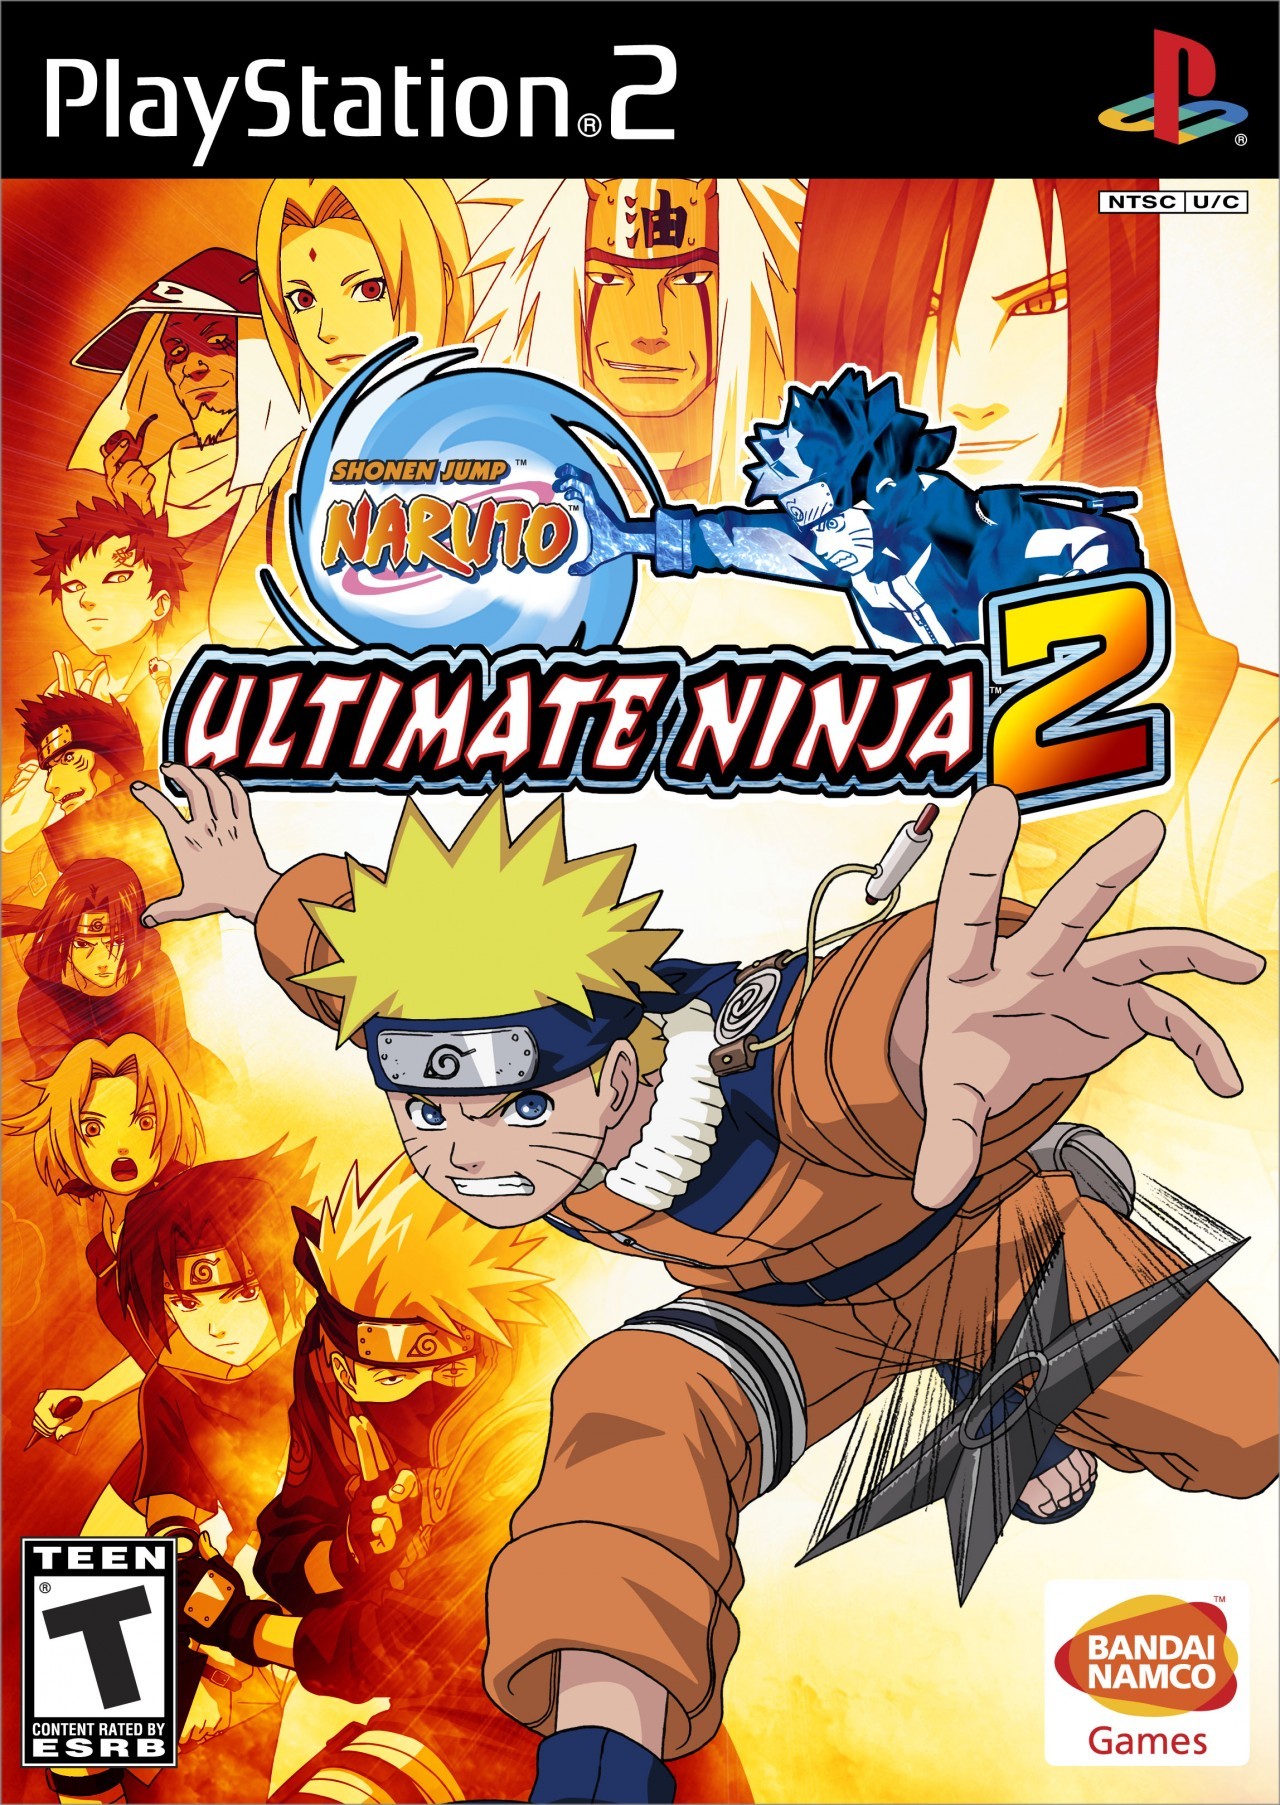 naruto clash of ninja 2 characters